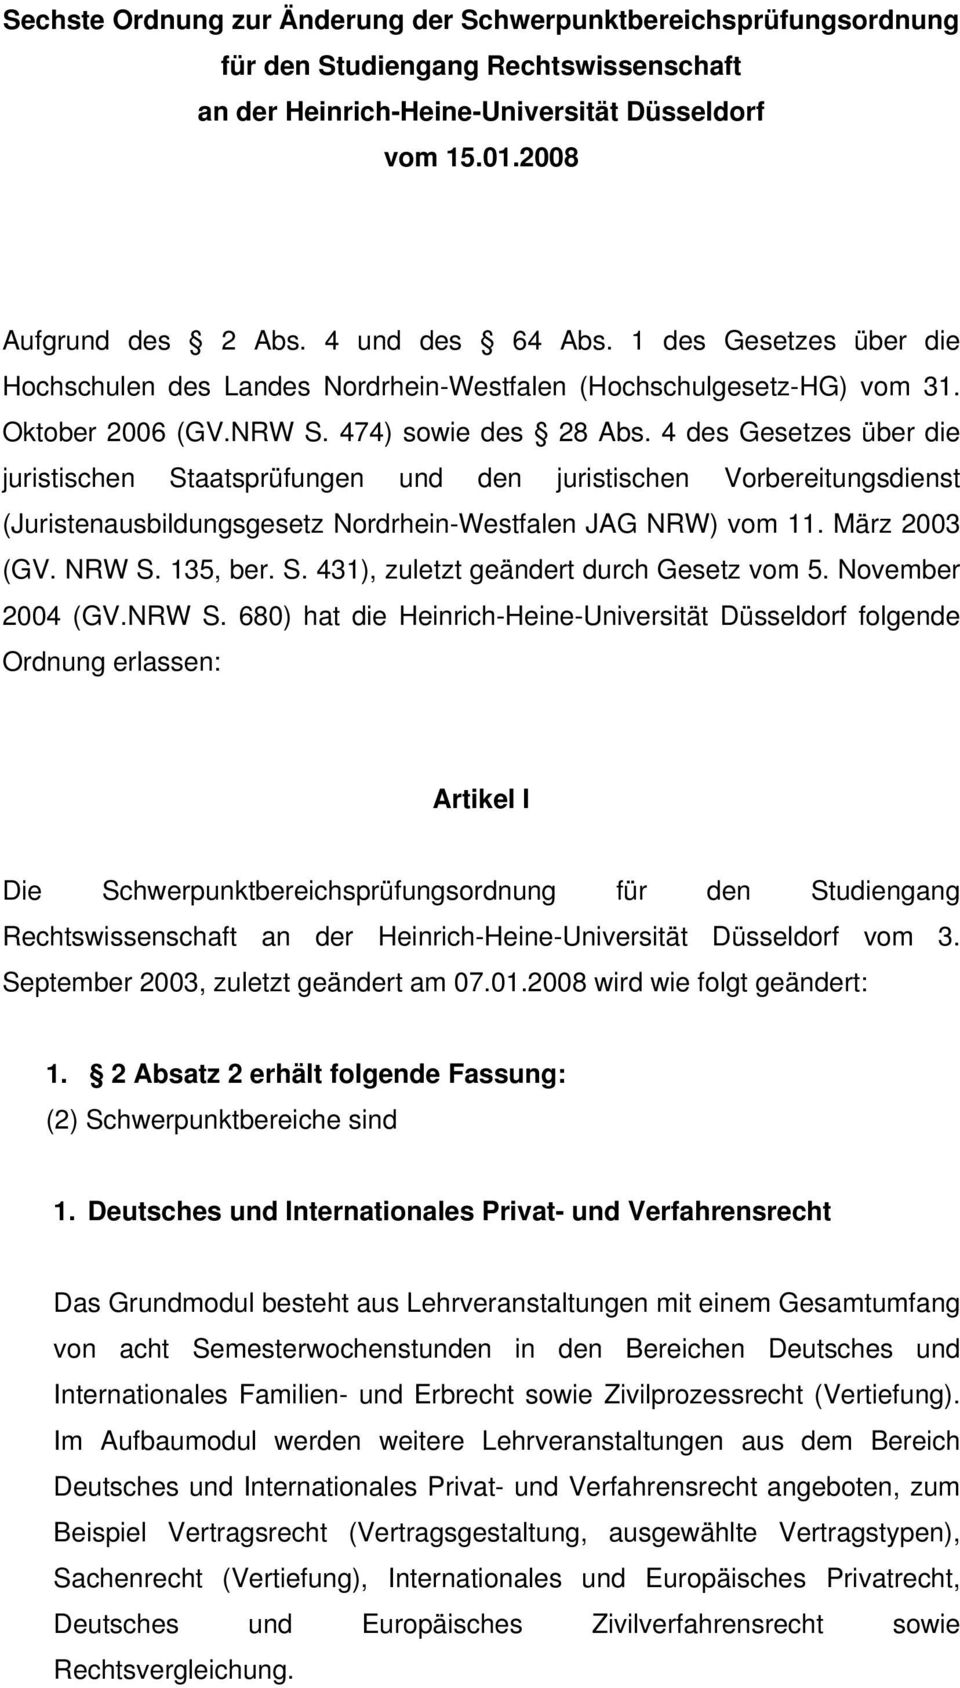 4 des Gesetzes über die juristischen Staatsprüfungen und den juristischen Vorbereitungsdienst (Juristenausbildungsgesetz Nordrhein-Westfalen JAG NRW) vom 11. März 2003 (GV. NRW S. 135, ber. S. 431), zuletzt geändert durch Gesetz vom 5.